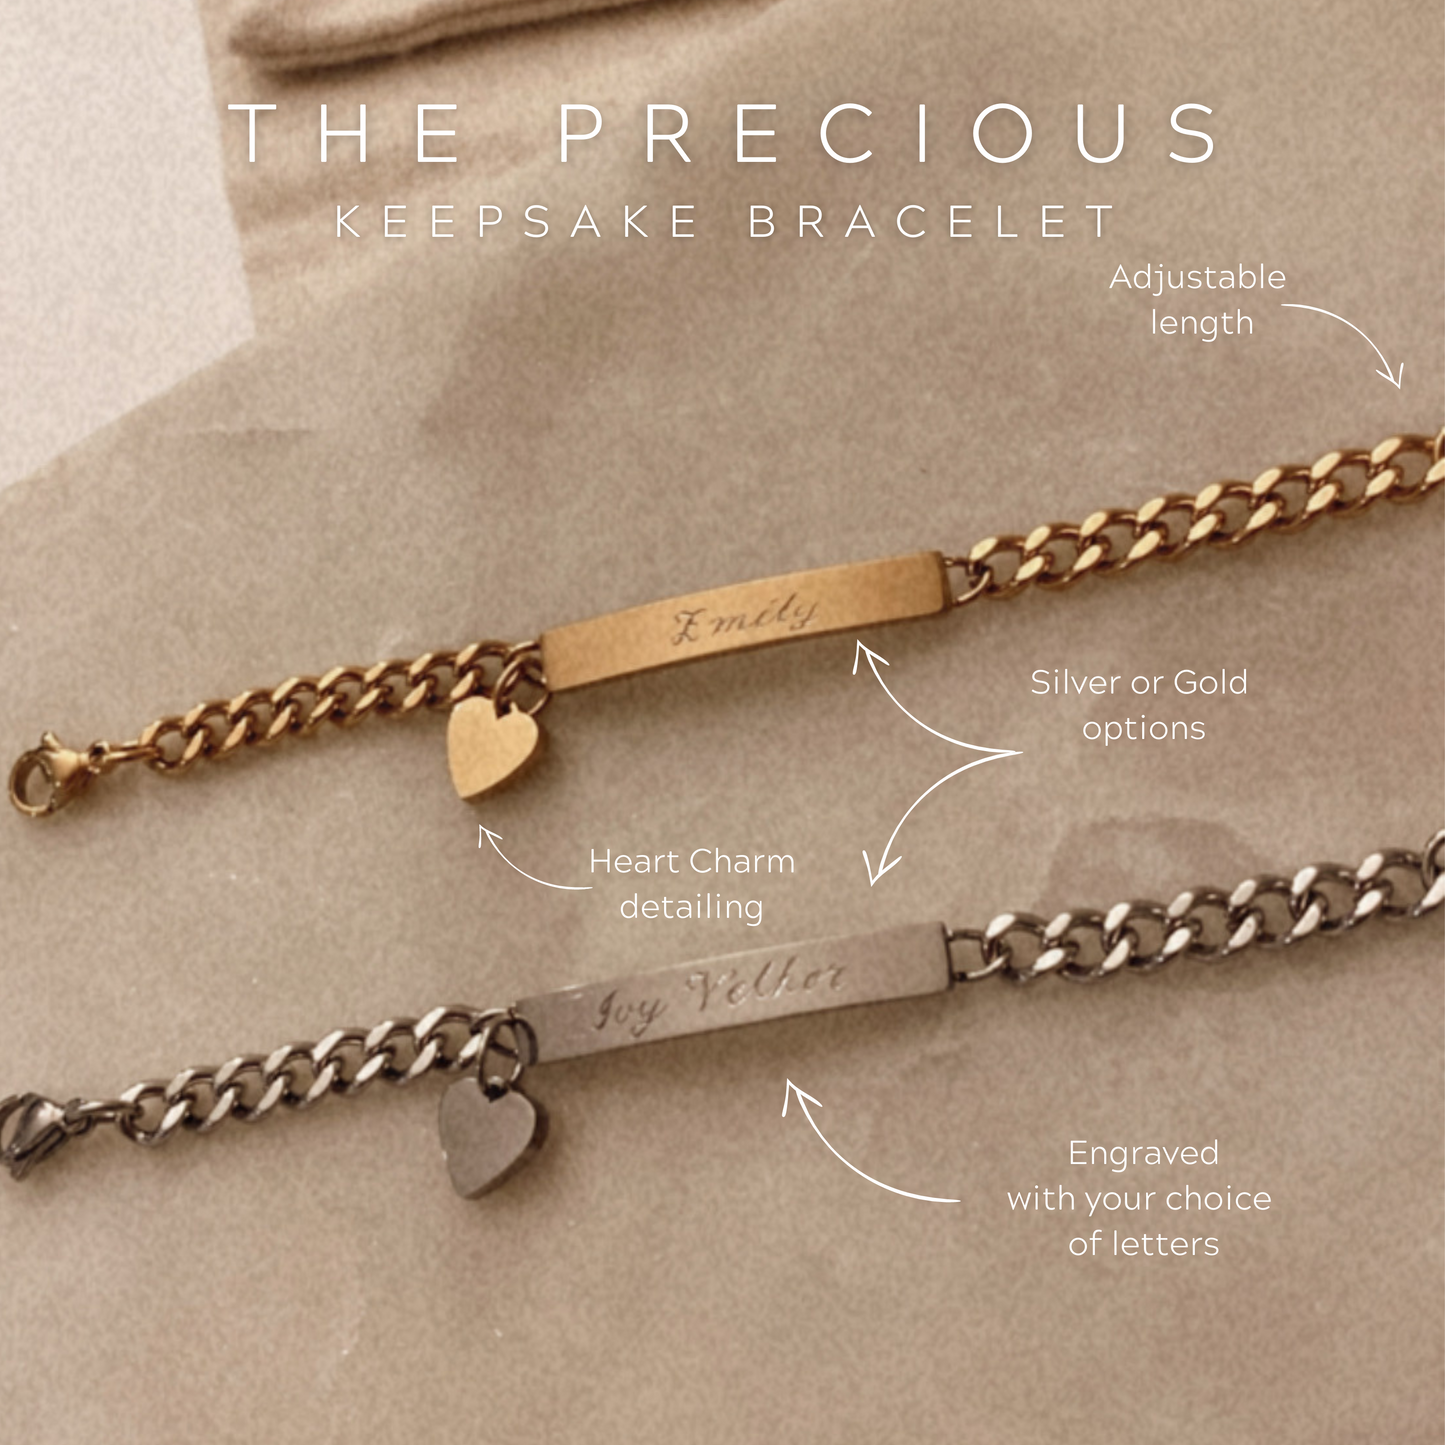 Hand-engraved Personalised Keepsake Bracelet - The Precious